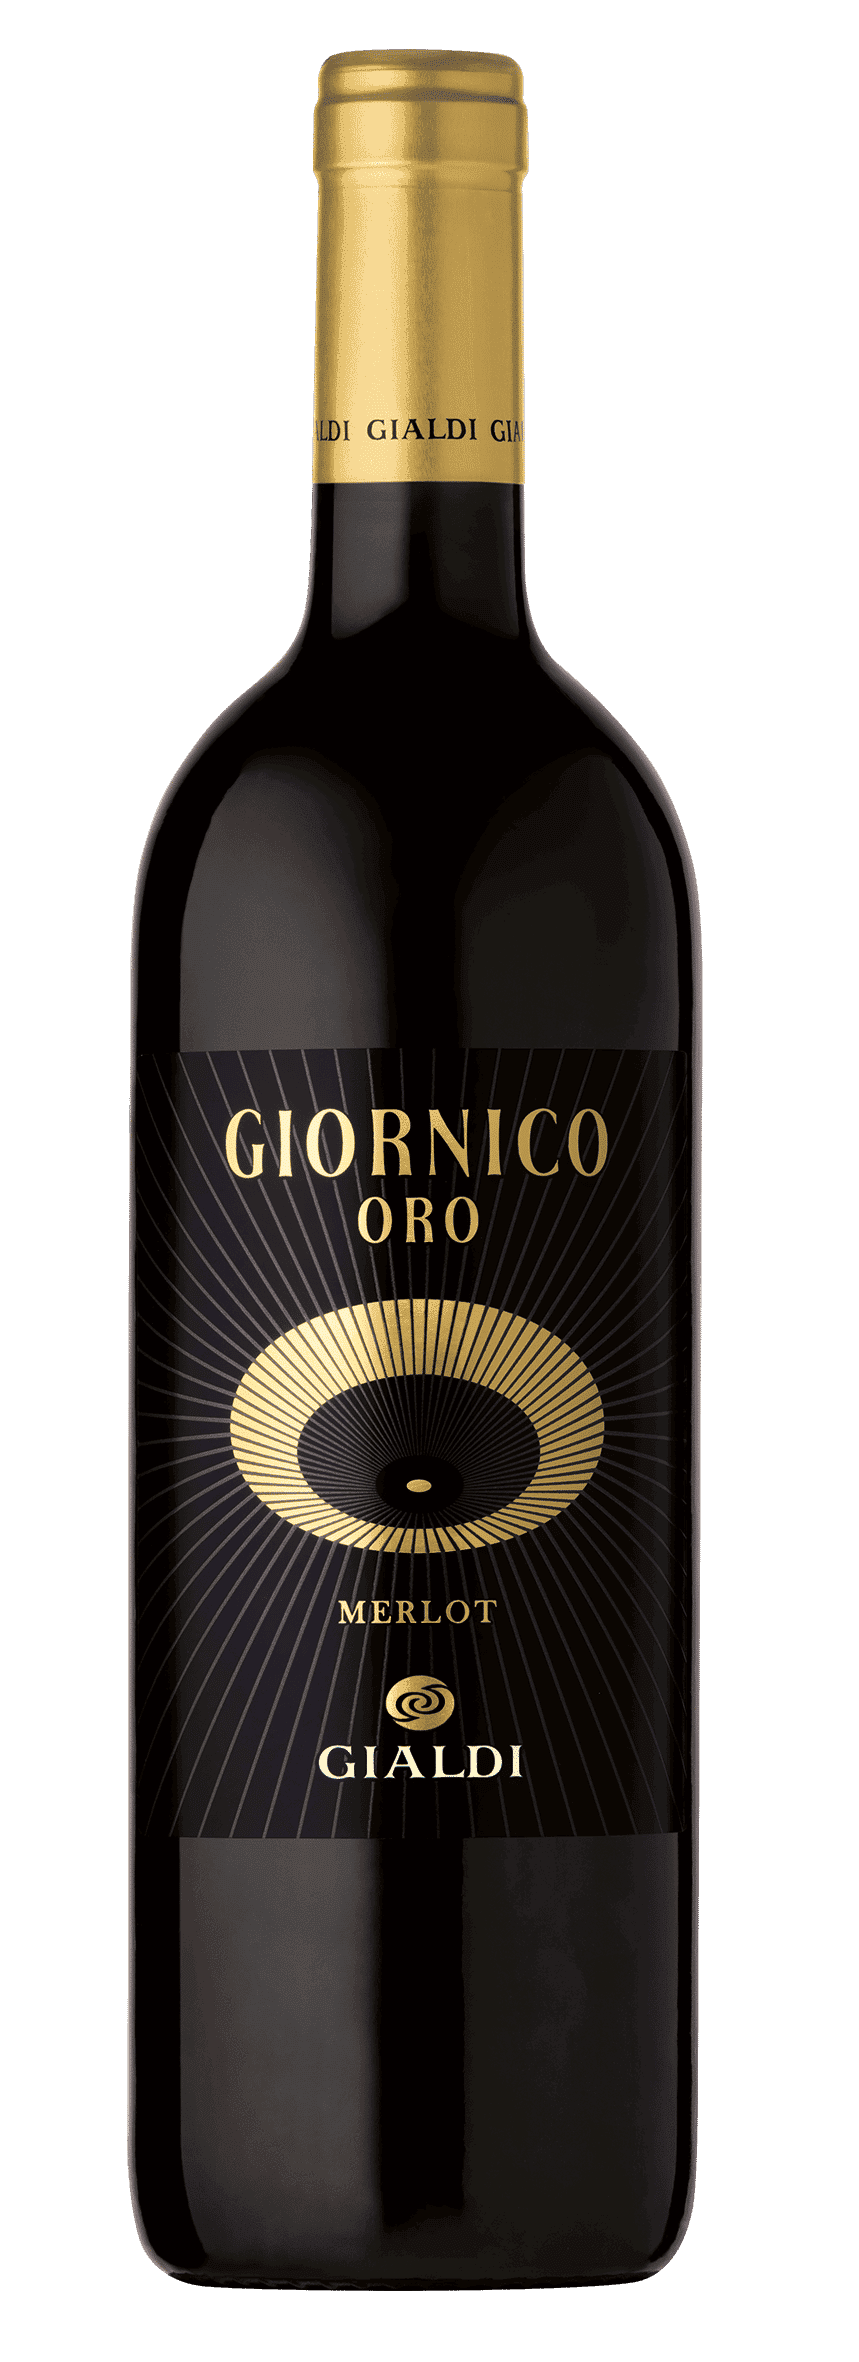 Giornico Oro - Ticino DOC Merlot - 2018 - Gialdi